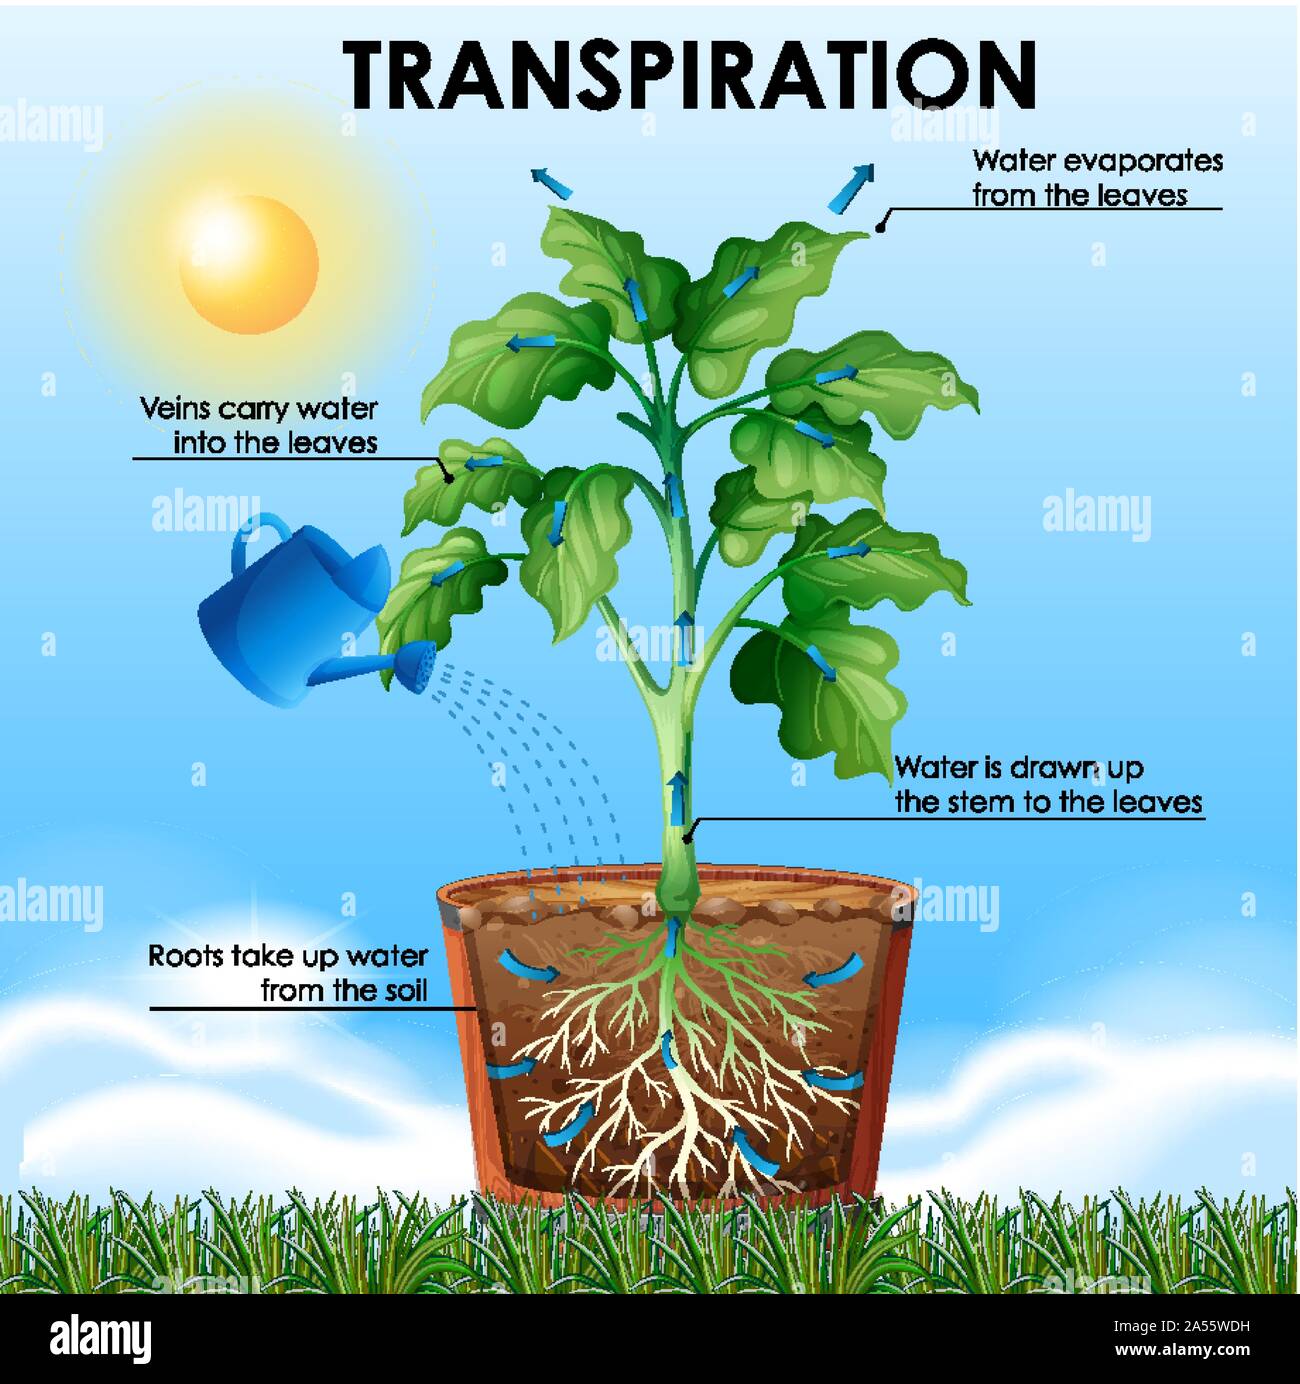 Diagramm mit Transpiration mit Pflanzen und Wasser Abbildung  Stock-Vektorgrafik - Alamy